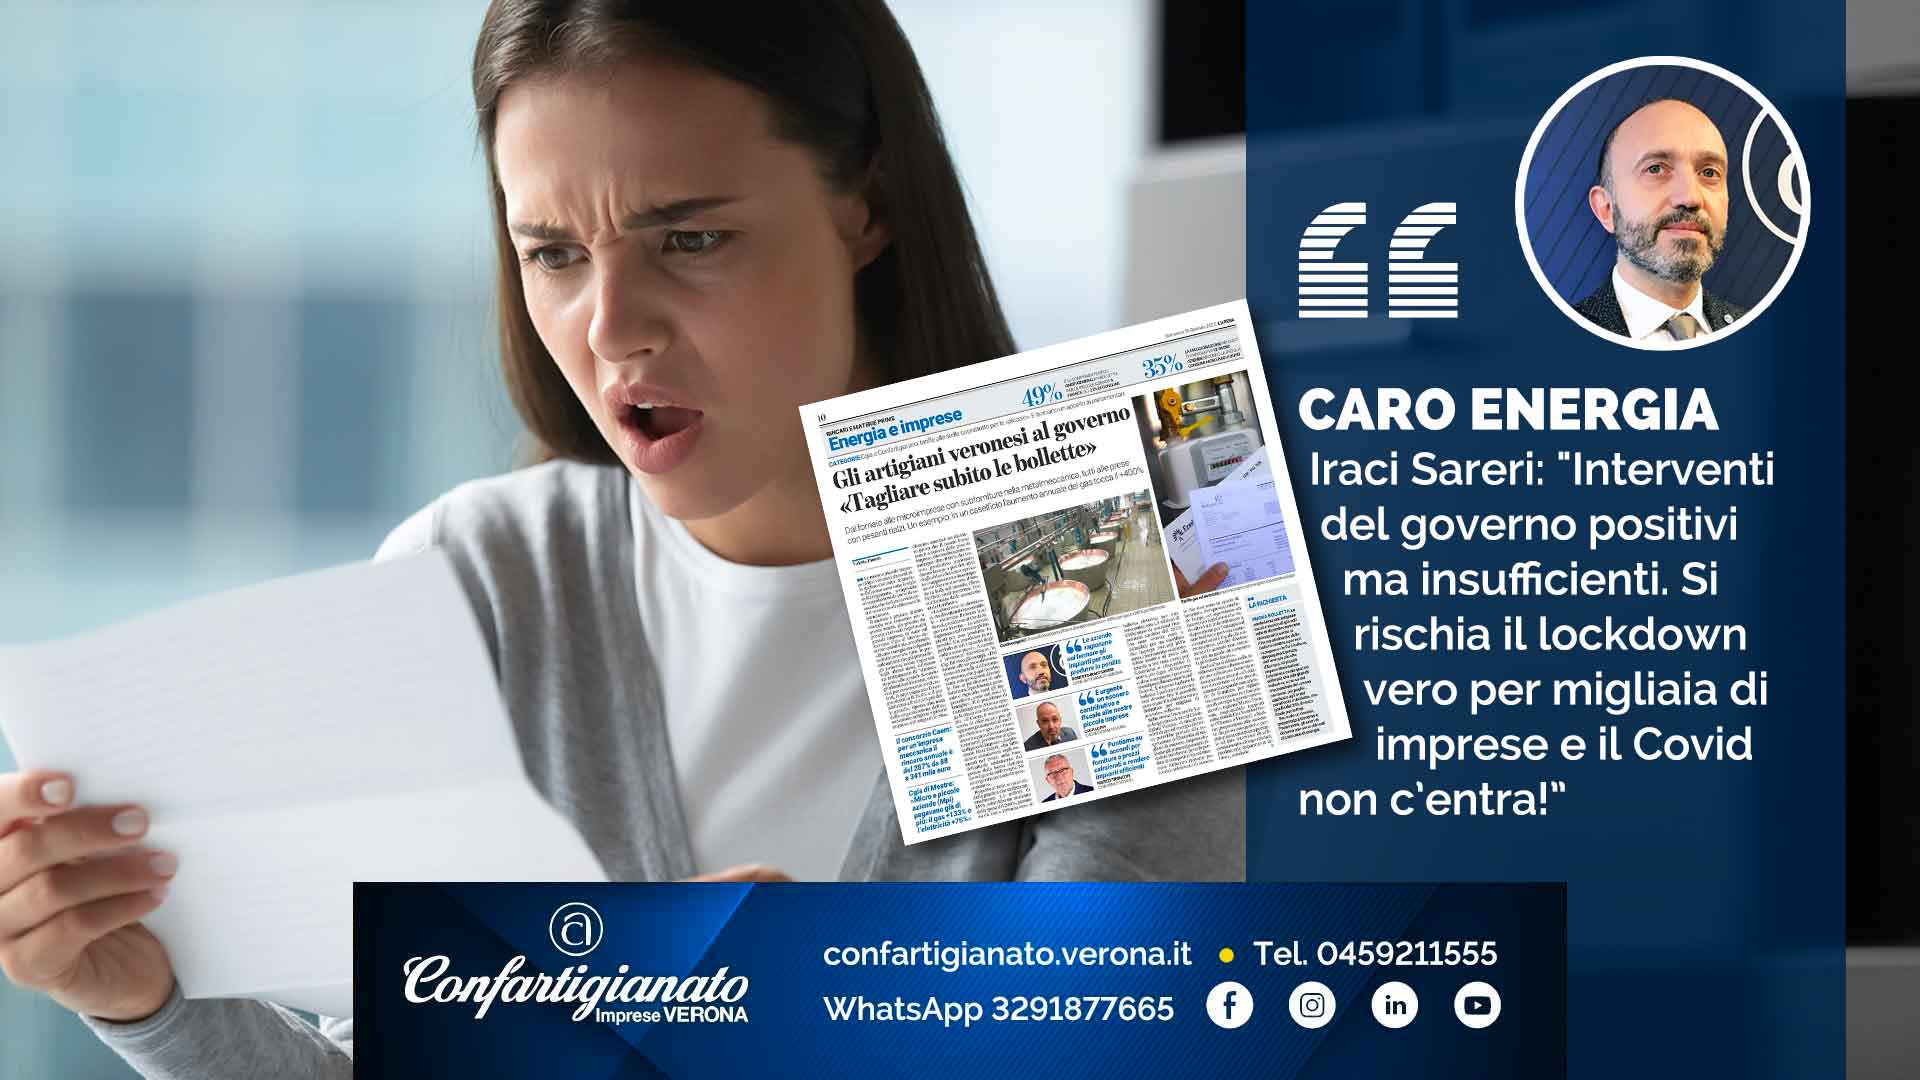 CARO ENERGIA – Iraci Sareri: "Interventi del governo positivi ma insufficienti. Si rischia il lockdown vero per migliaia di imprese e il Covid non c’entra”